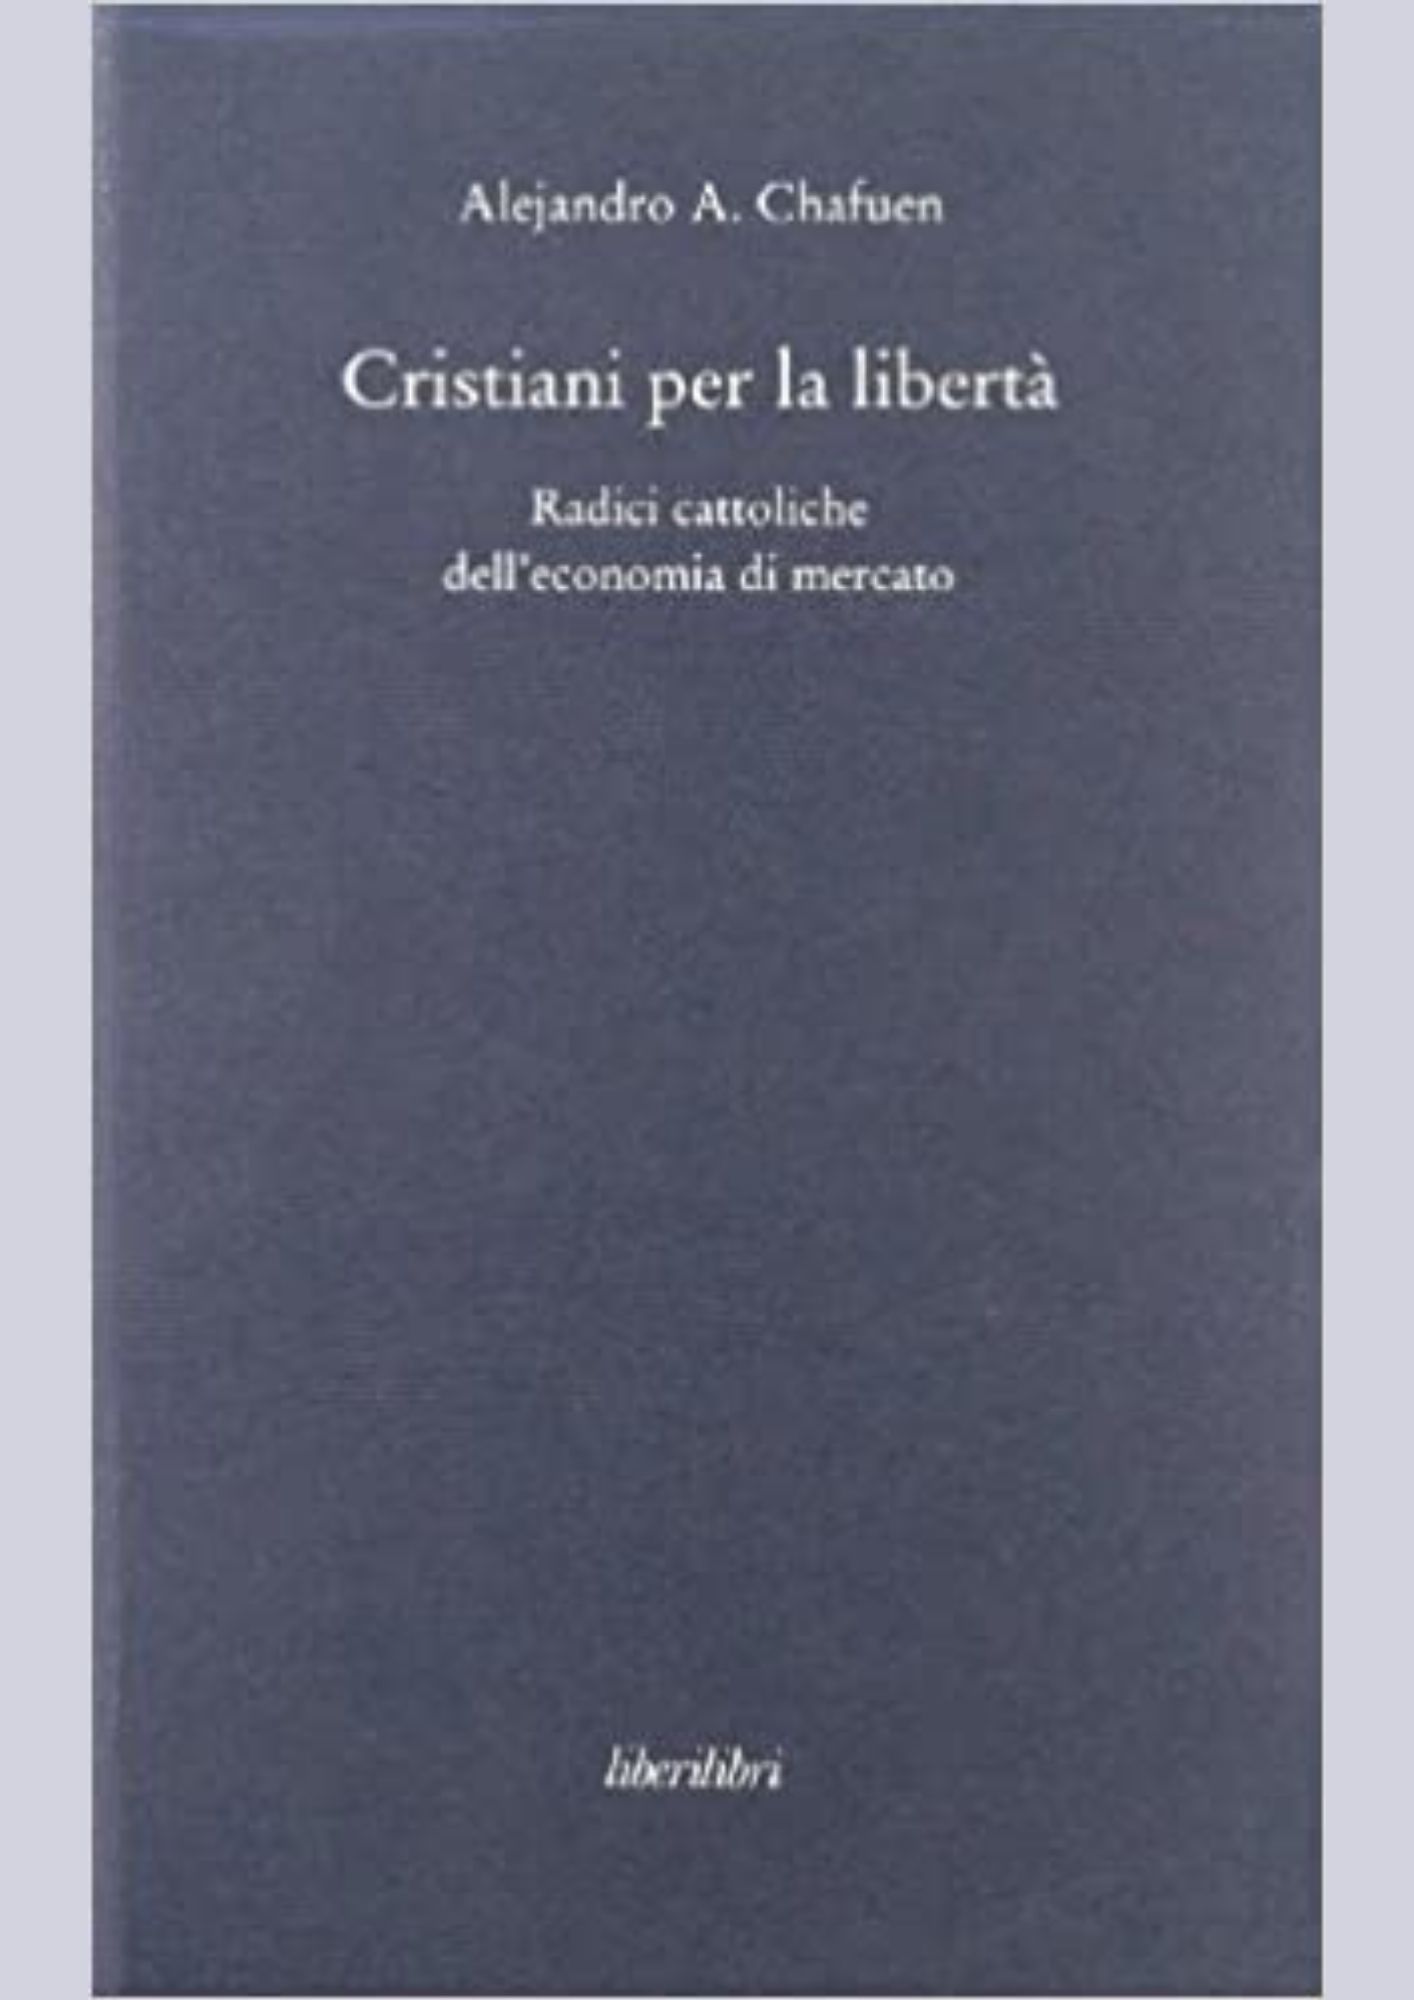 Alejandro A. Chafuen in Cristiani per la libertà! Radici cattoliche dell’economia di mercato